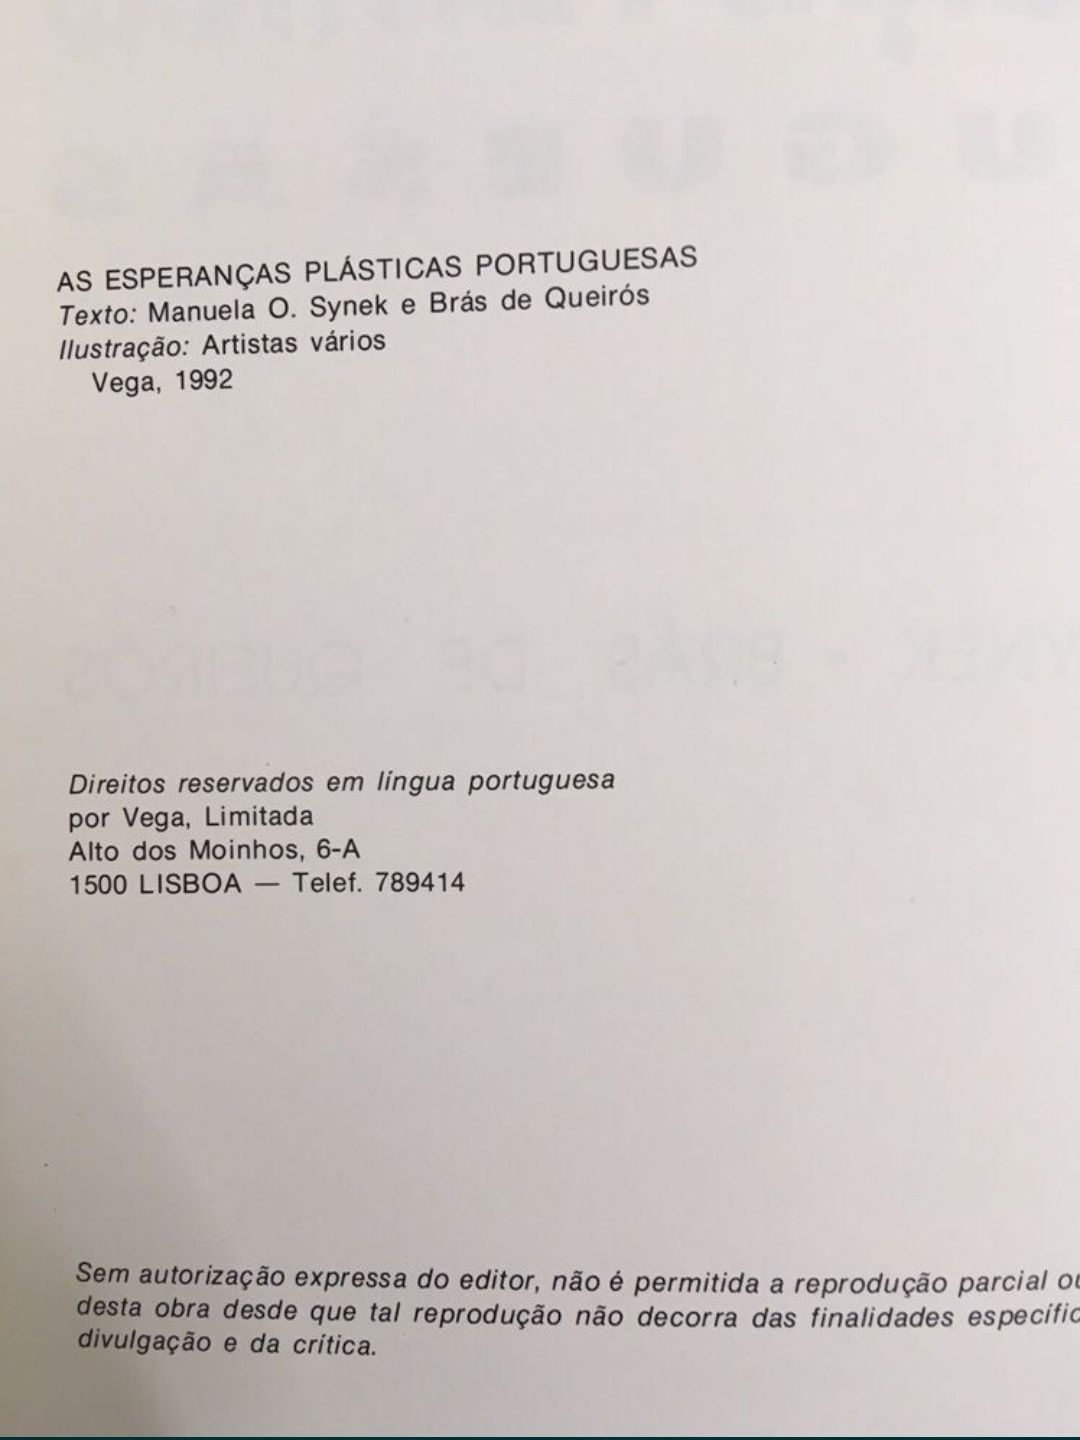 As Esperanças Plásticas Portuguesas de Manuela Synek e Brás de Queirós